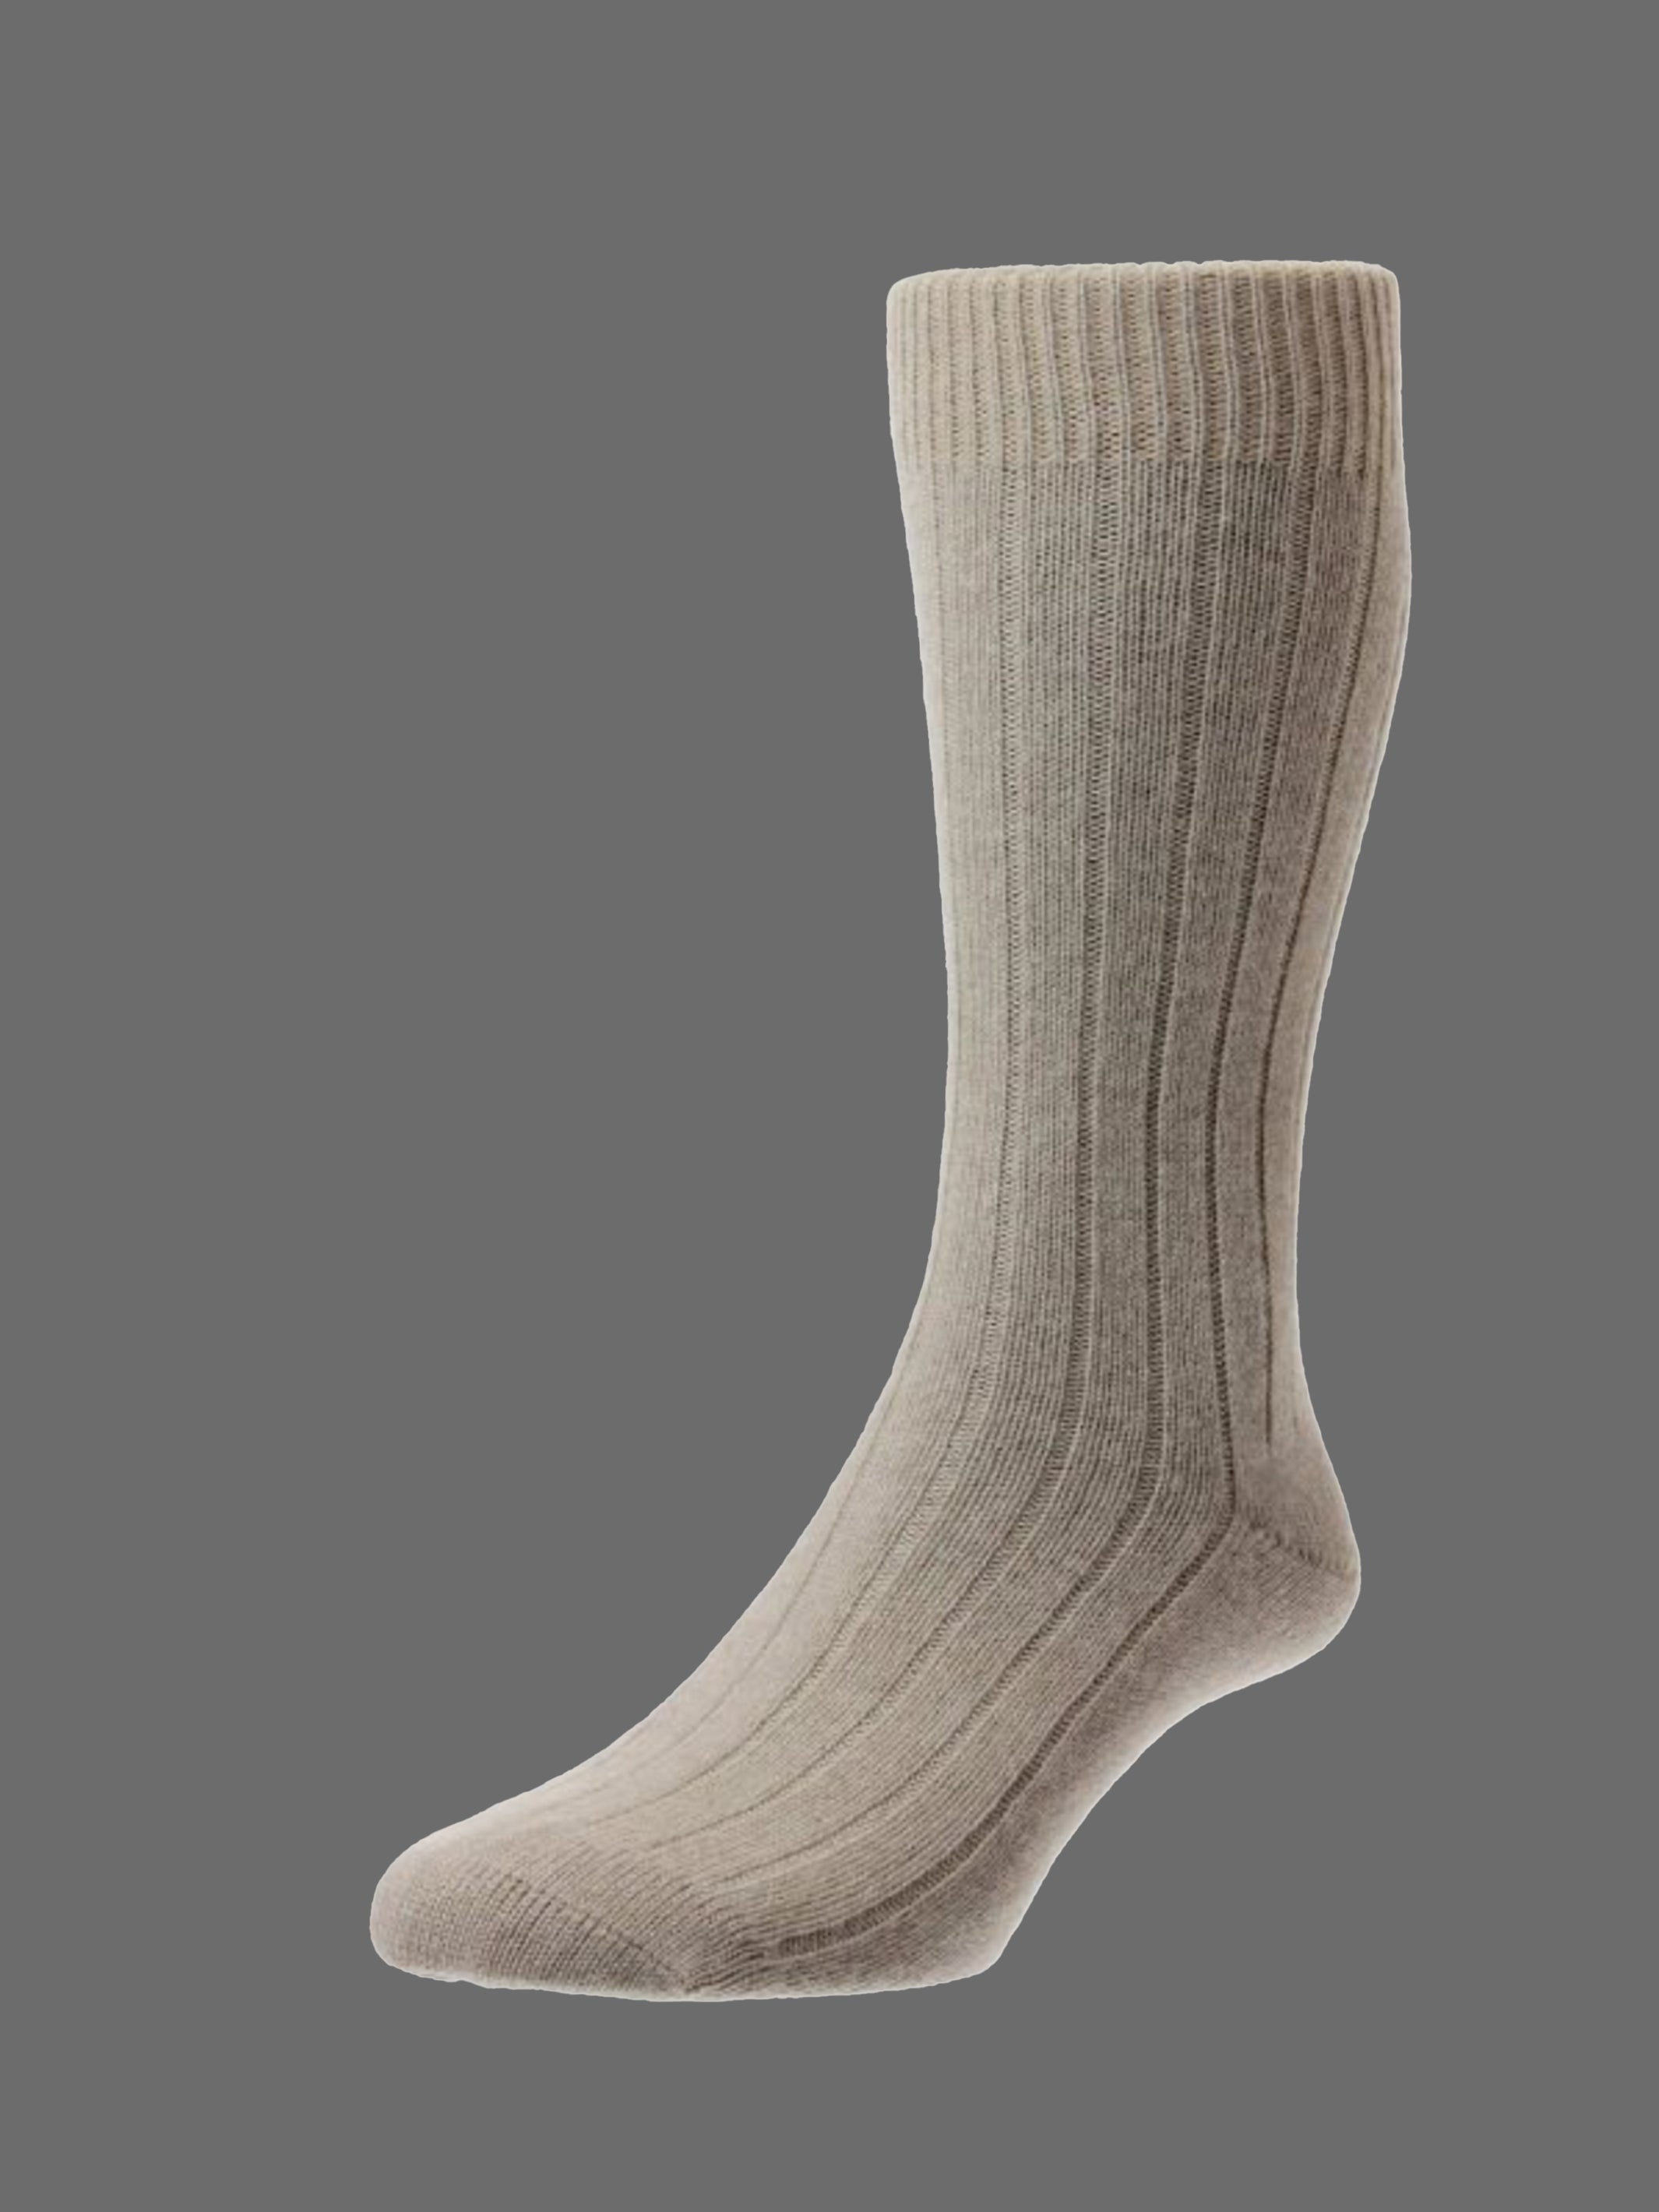 Waddington Cashmere Socks - Sand